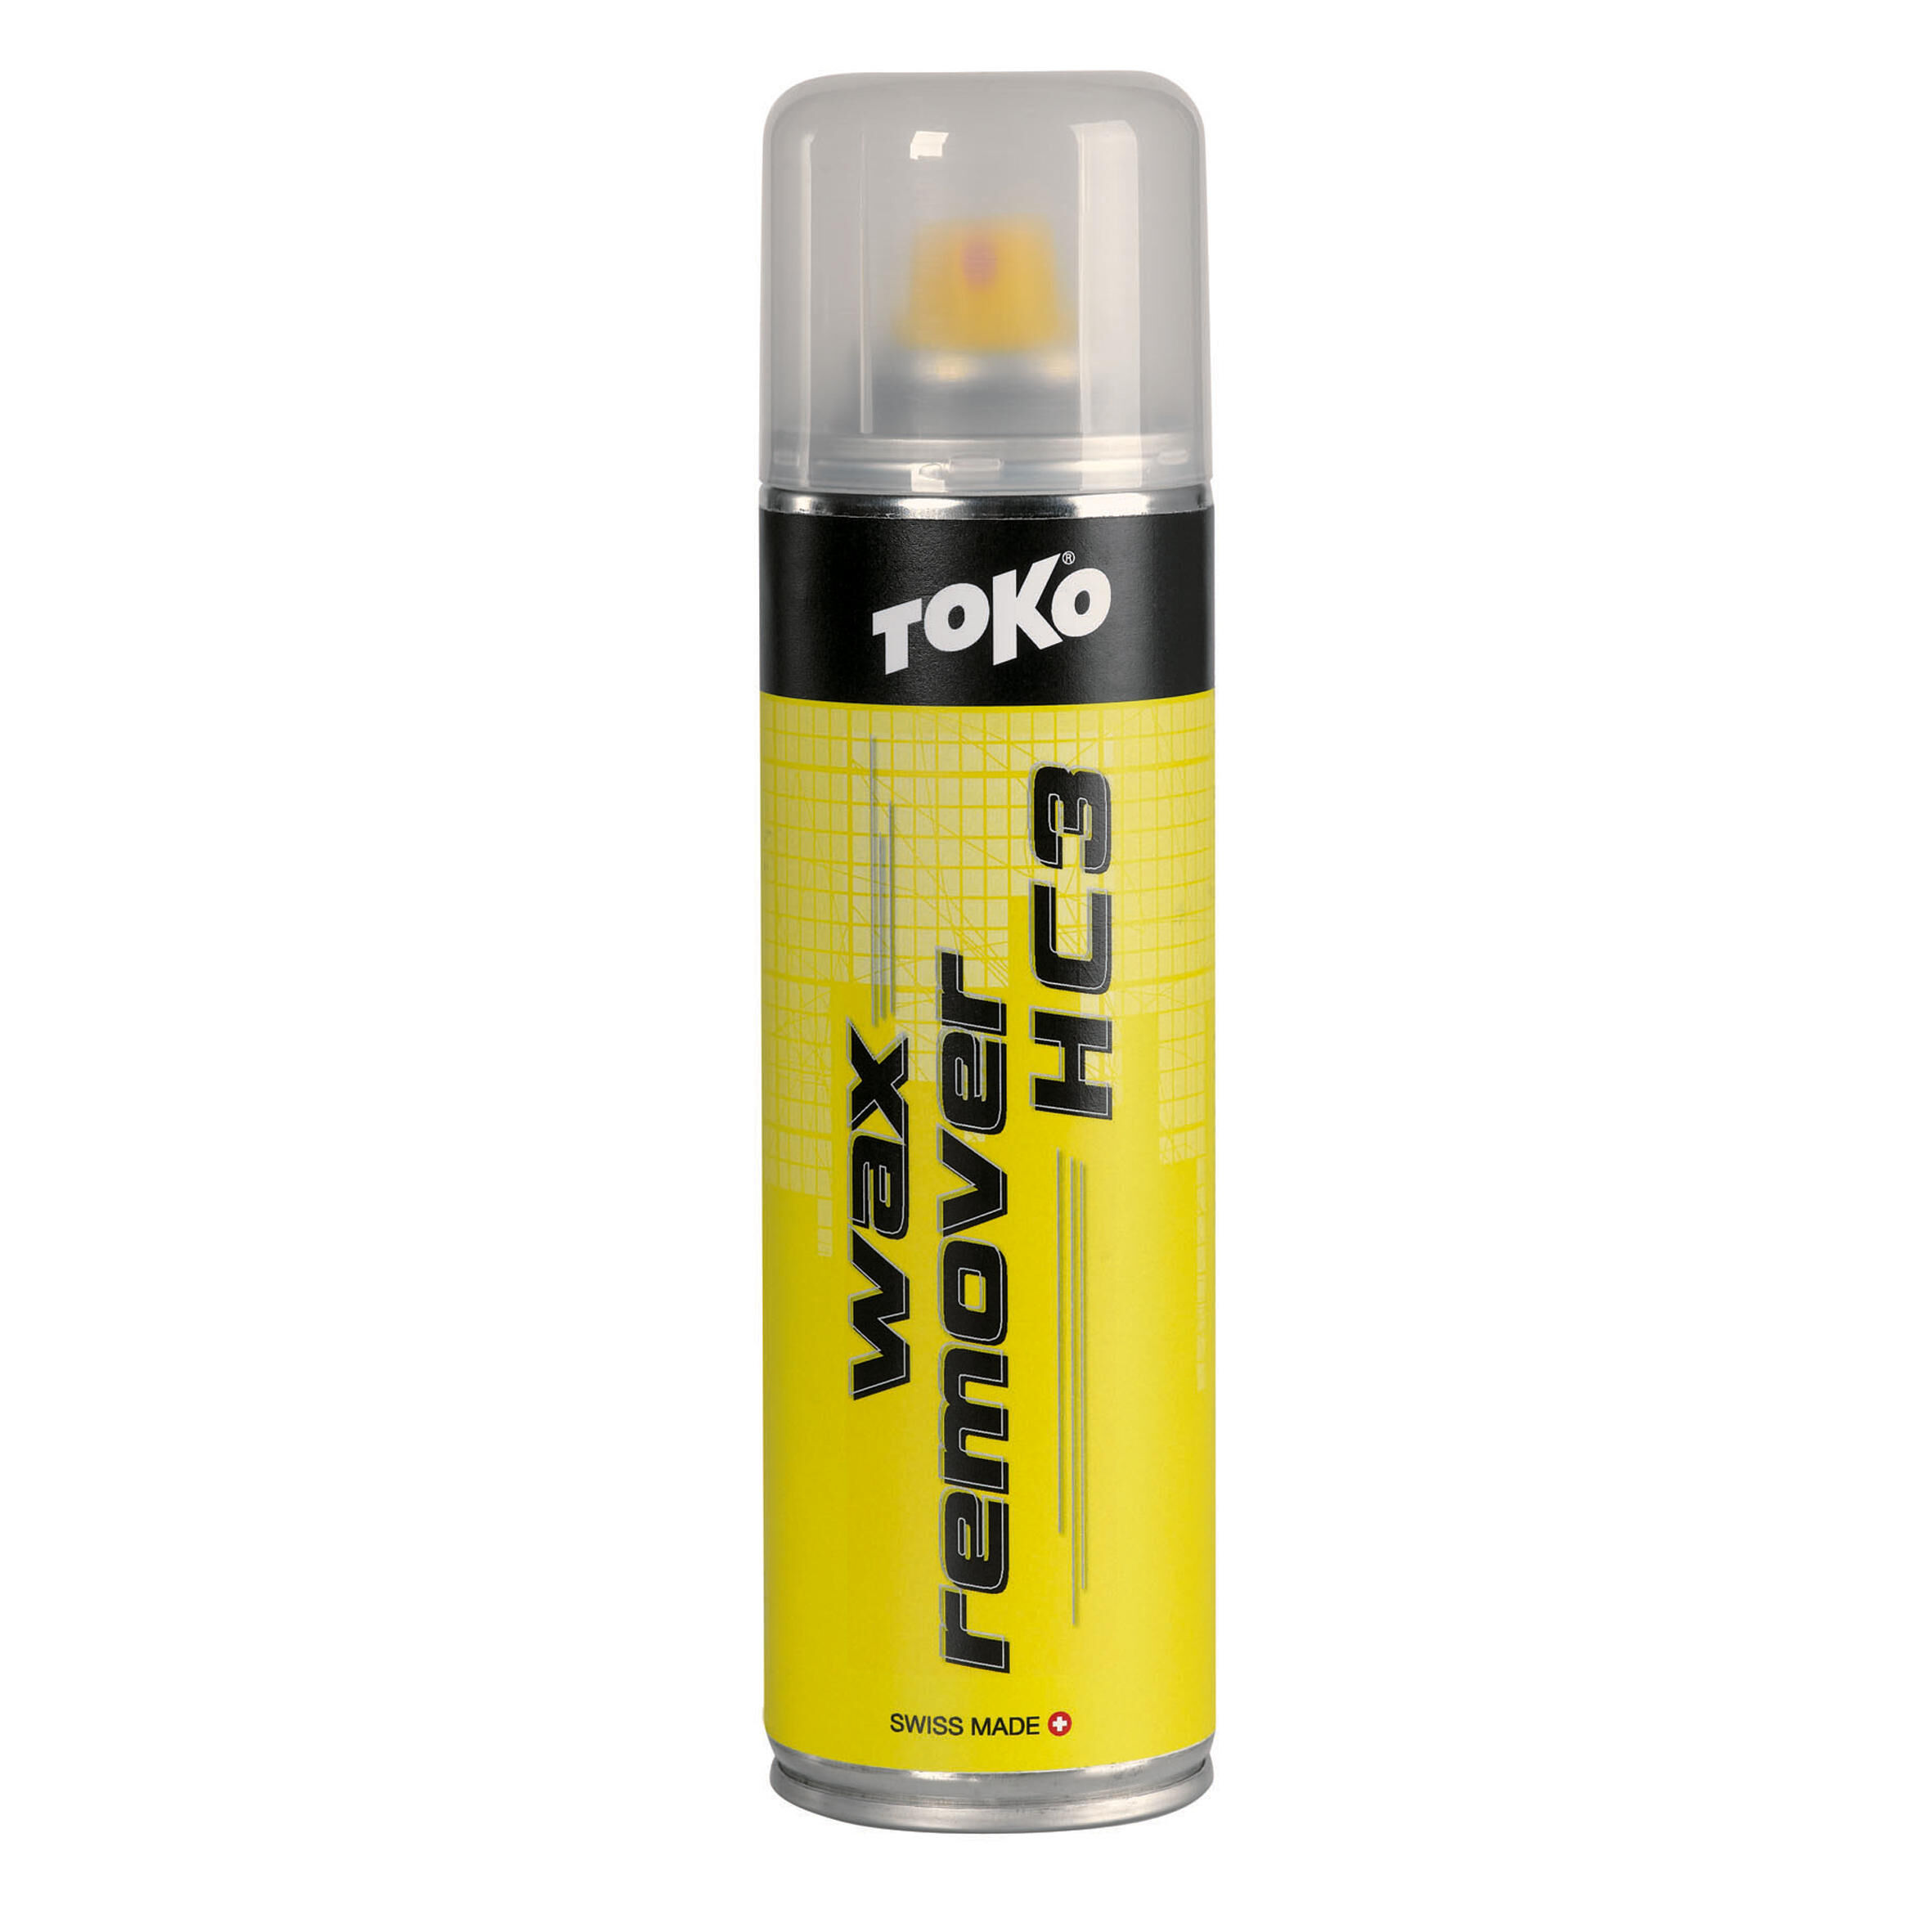 TOKO Wax Remover Hc3 250ml Toko